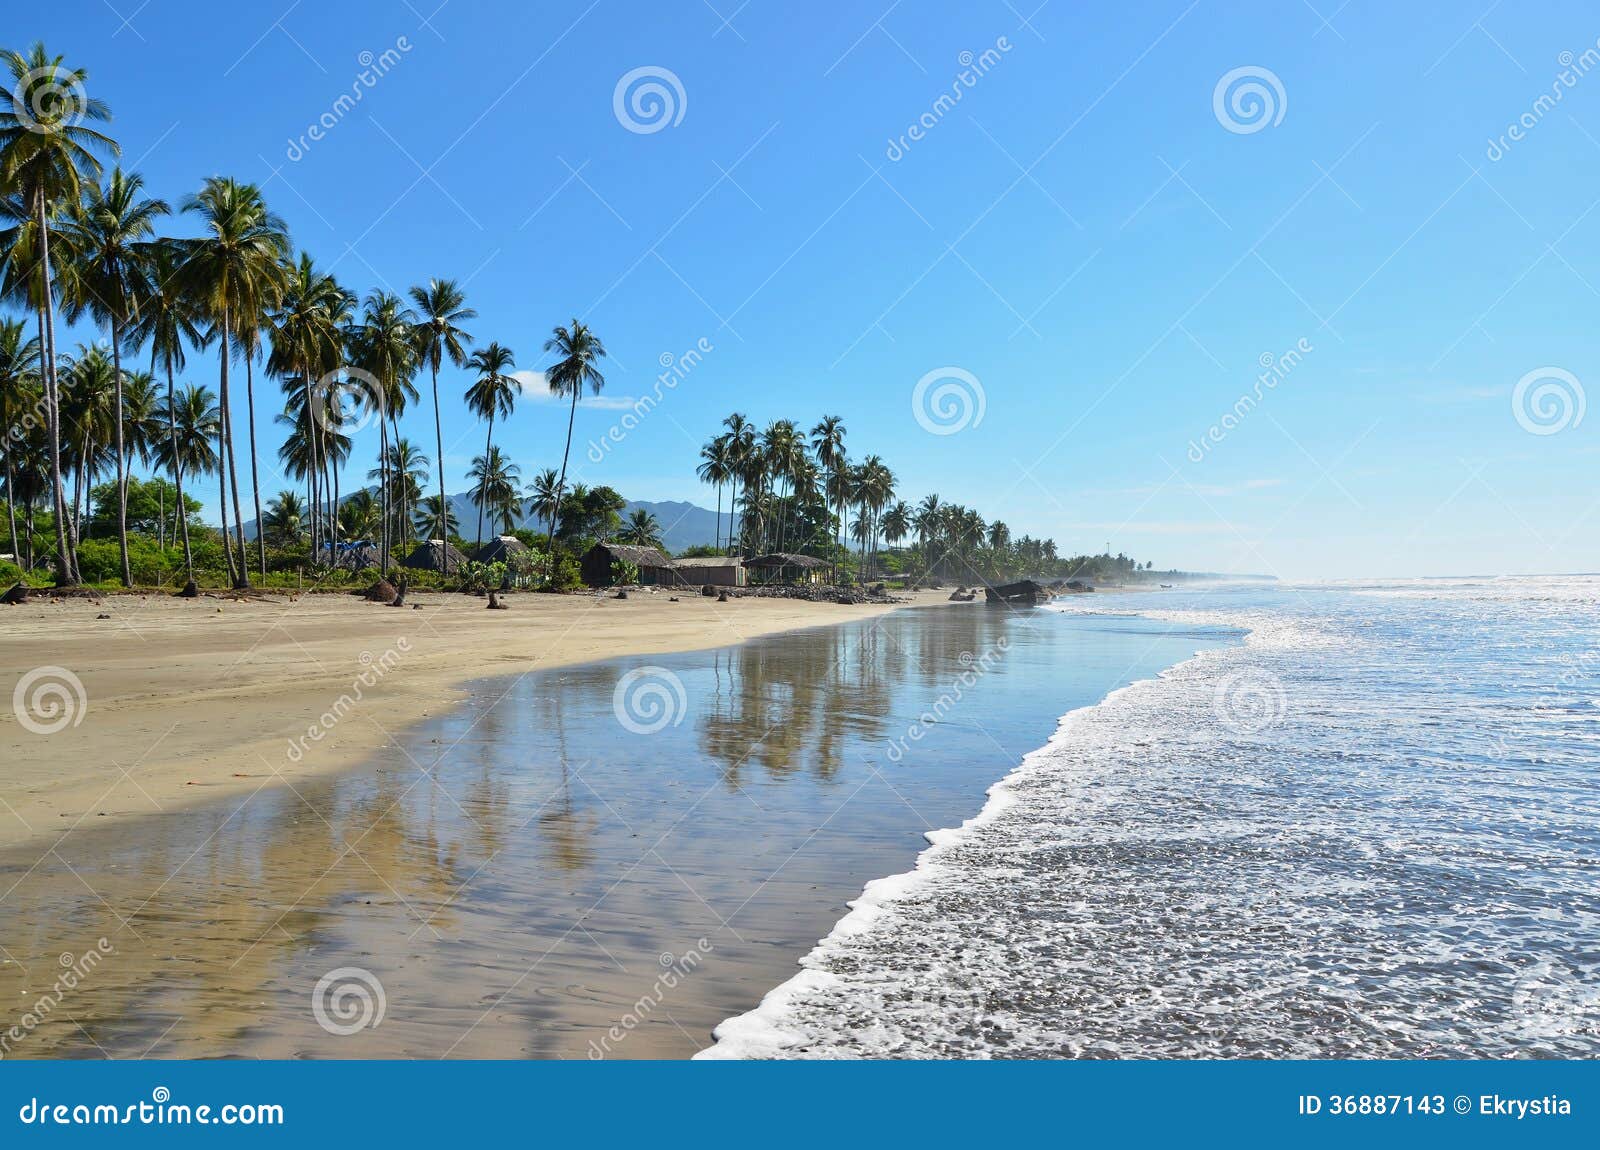  beach at playa el espino, el salvador